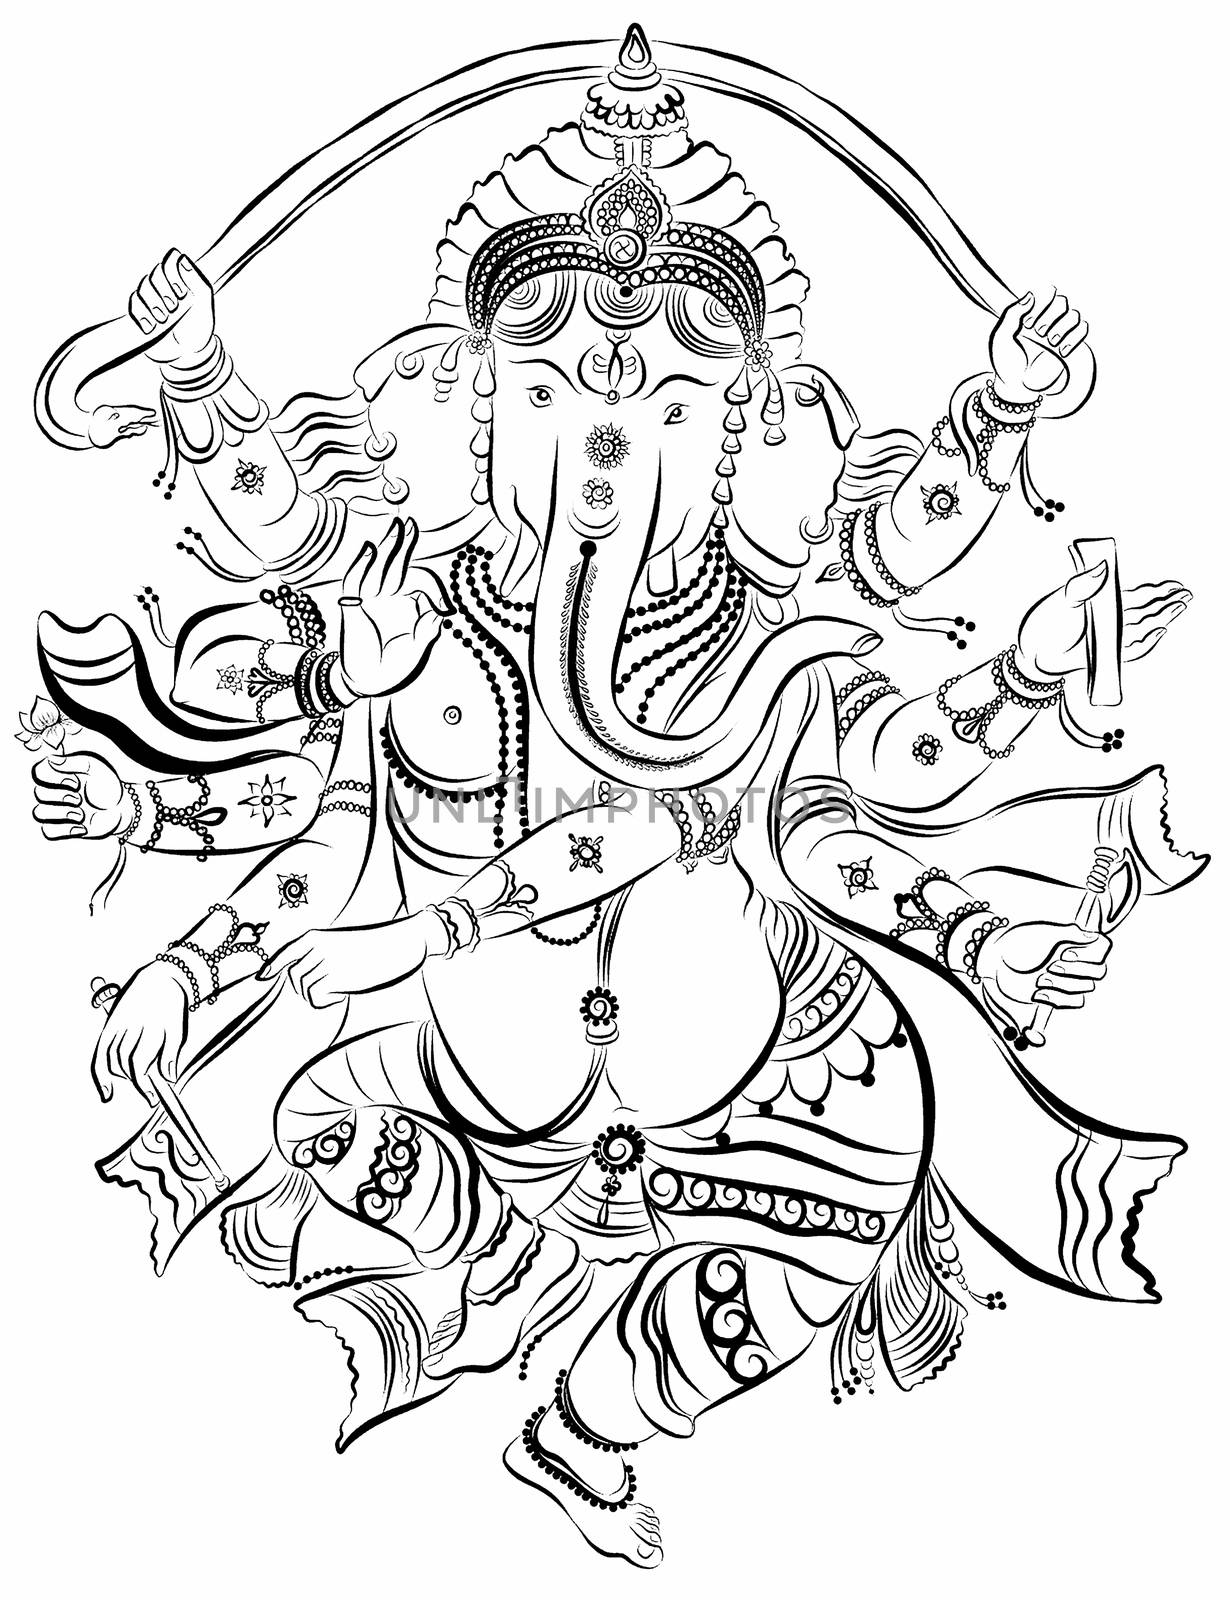 Drawing of Ganesha. Line art illustration of elephant-headed god. Buddhism Religion